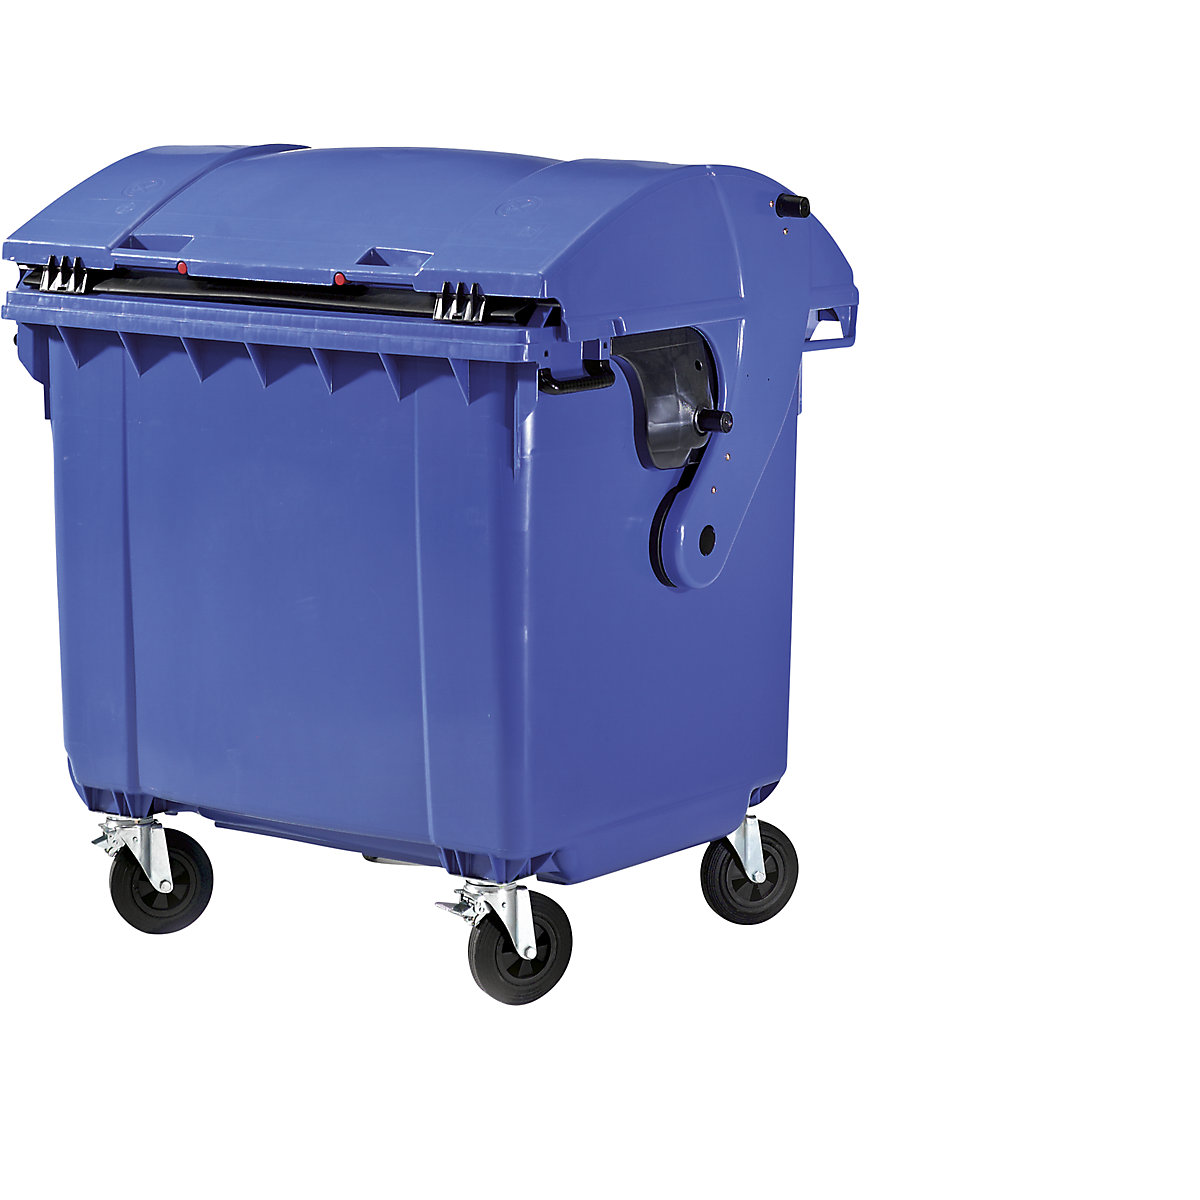 Kontejner za smeće od plastike, DIN EN 840, volumen 1100 l, ŠxVxD 1360 x 1465 x 1100 mm, klizni poklopac, zaštita za djecu, u plavoj boji-6